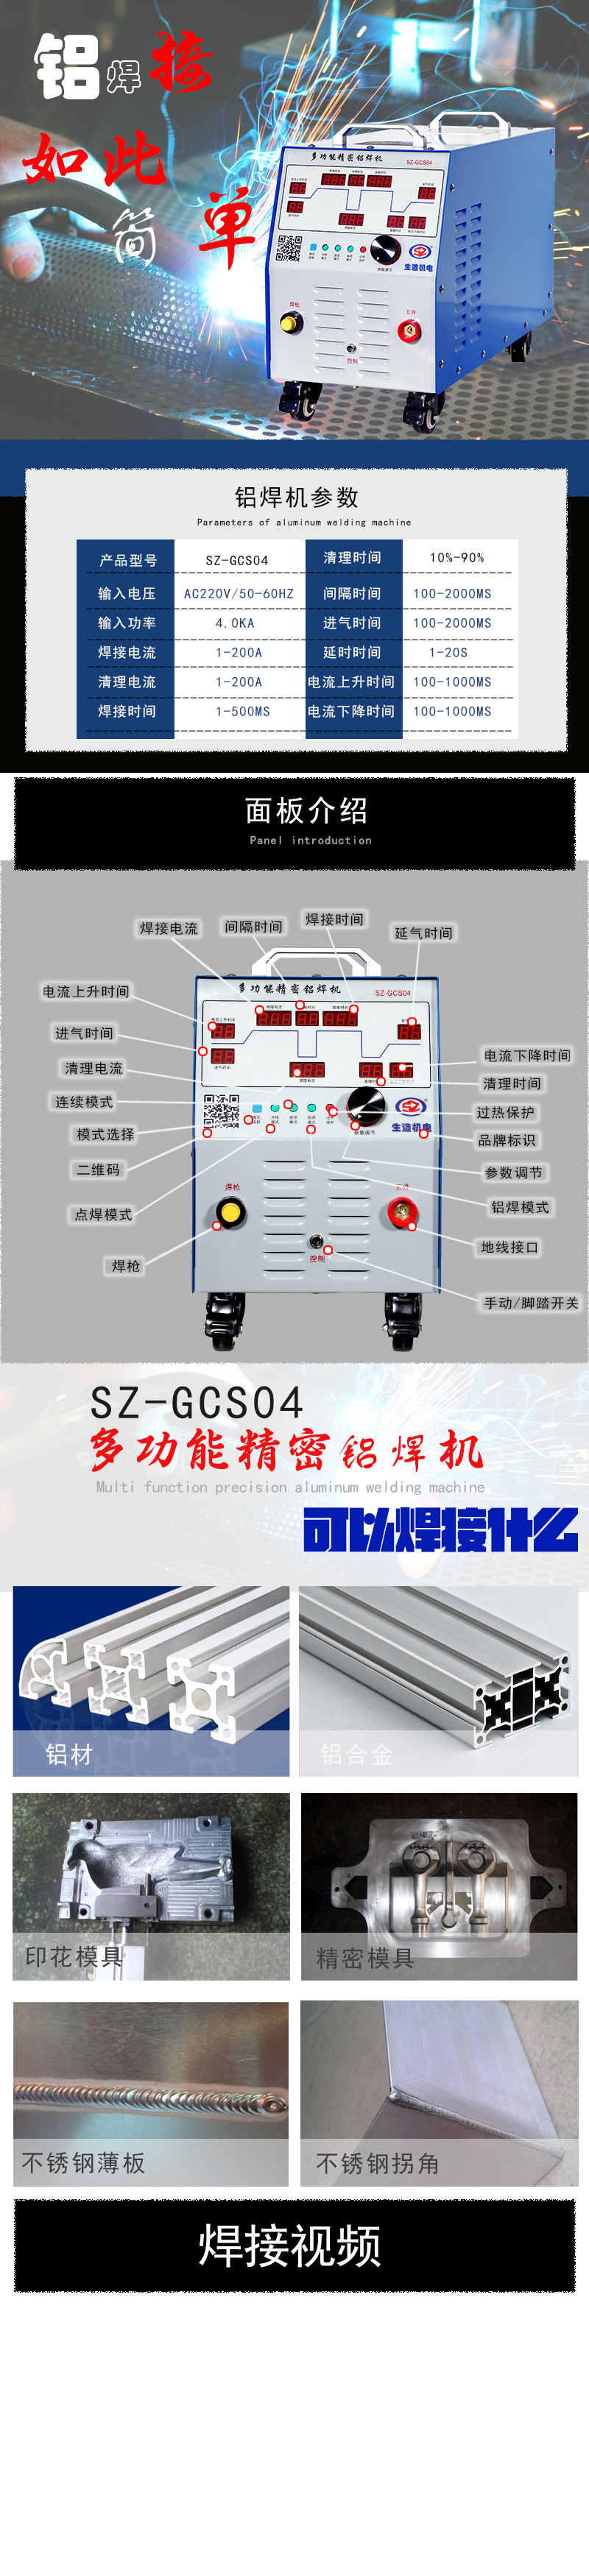 济南多功能精密铝焊机冷焊机精密铝焊机精密铝焊机冷焊机多功能精密铝焊机冷焊机SZ-GCS04图片